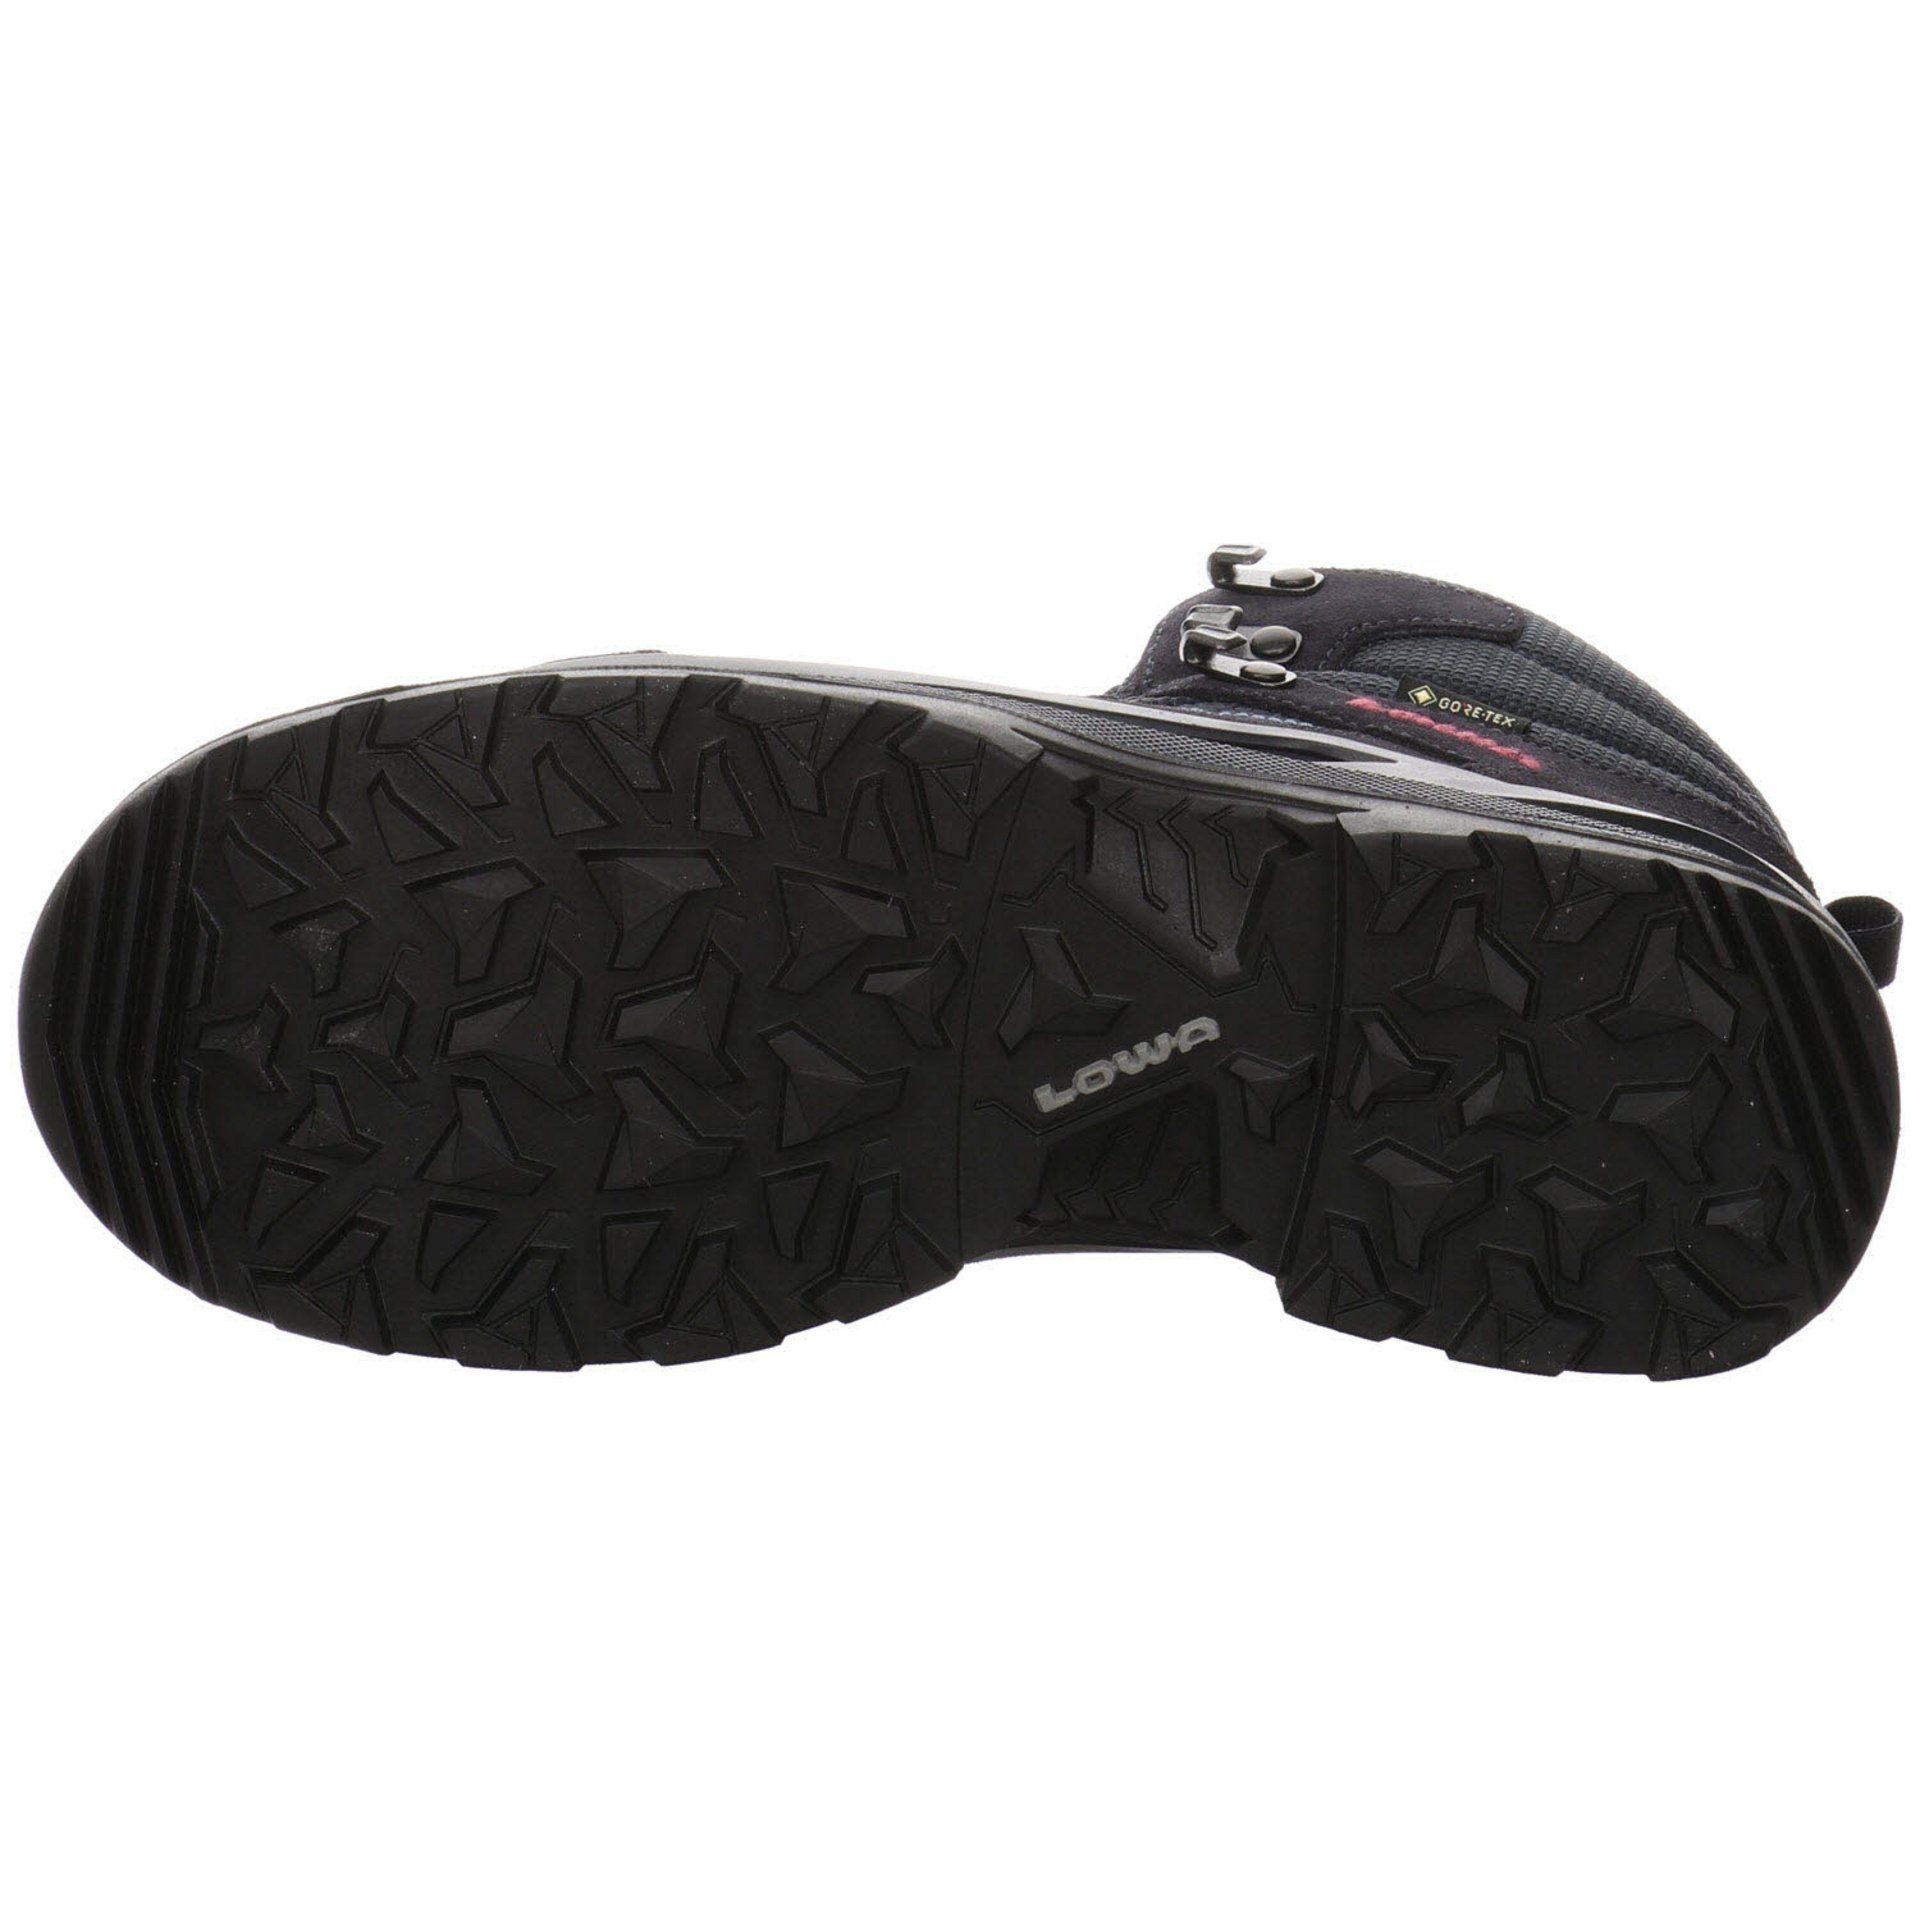 Damen Lowa Leder-/Textilkombination Outdoor NAVY Outdoorschuh Schuhe